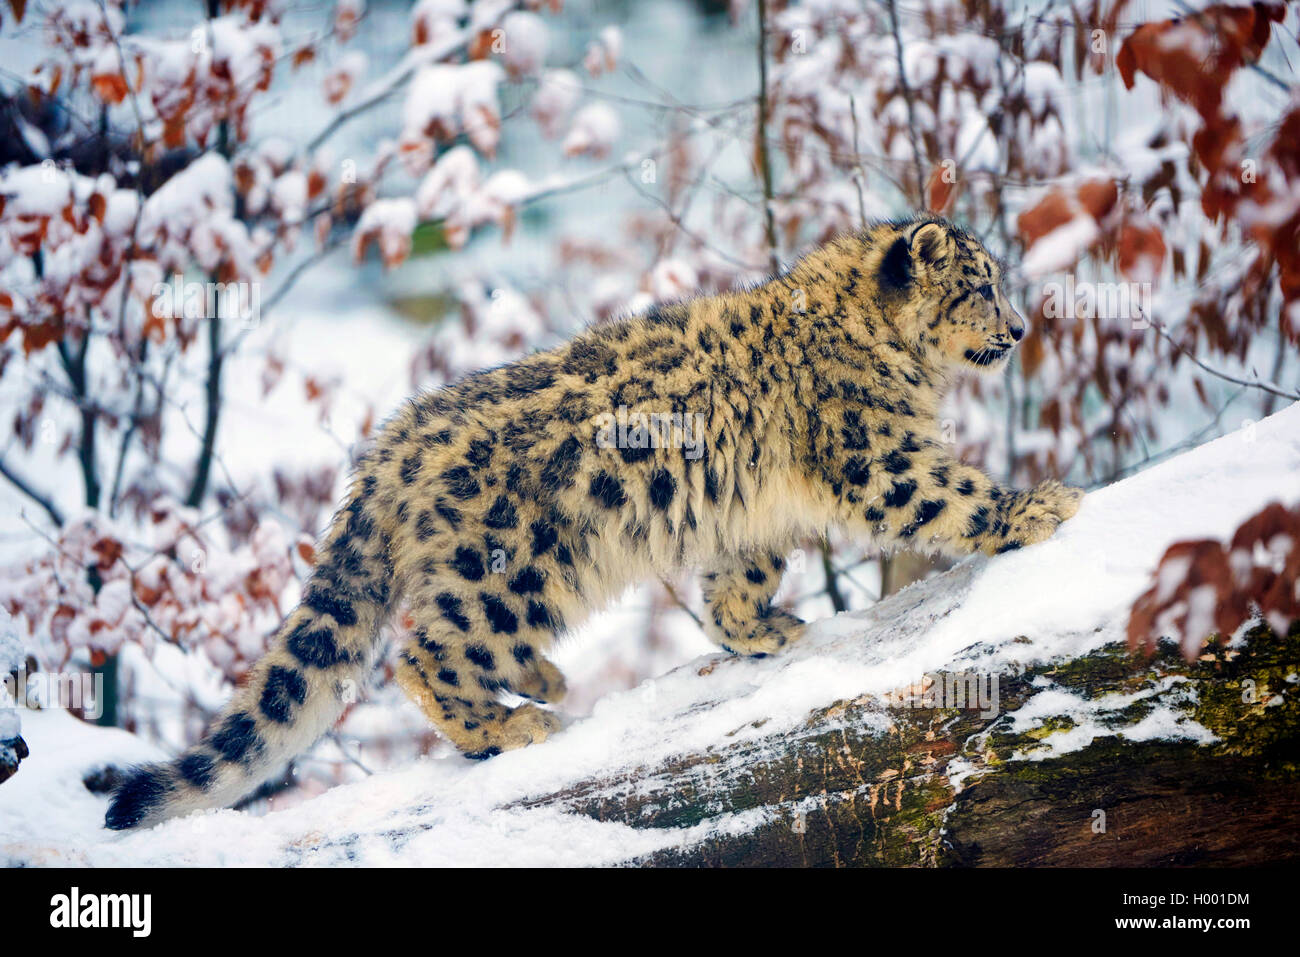 Snow Leopard (Uncia uncia, Panthera uncia), giovane animale nella neve Foto Stock